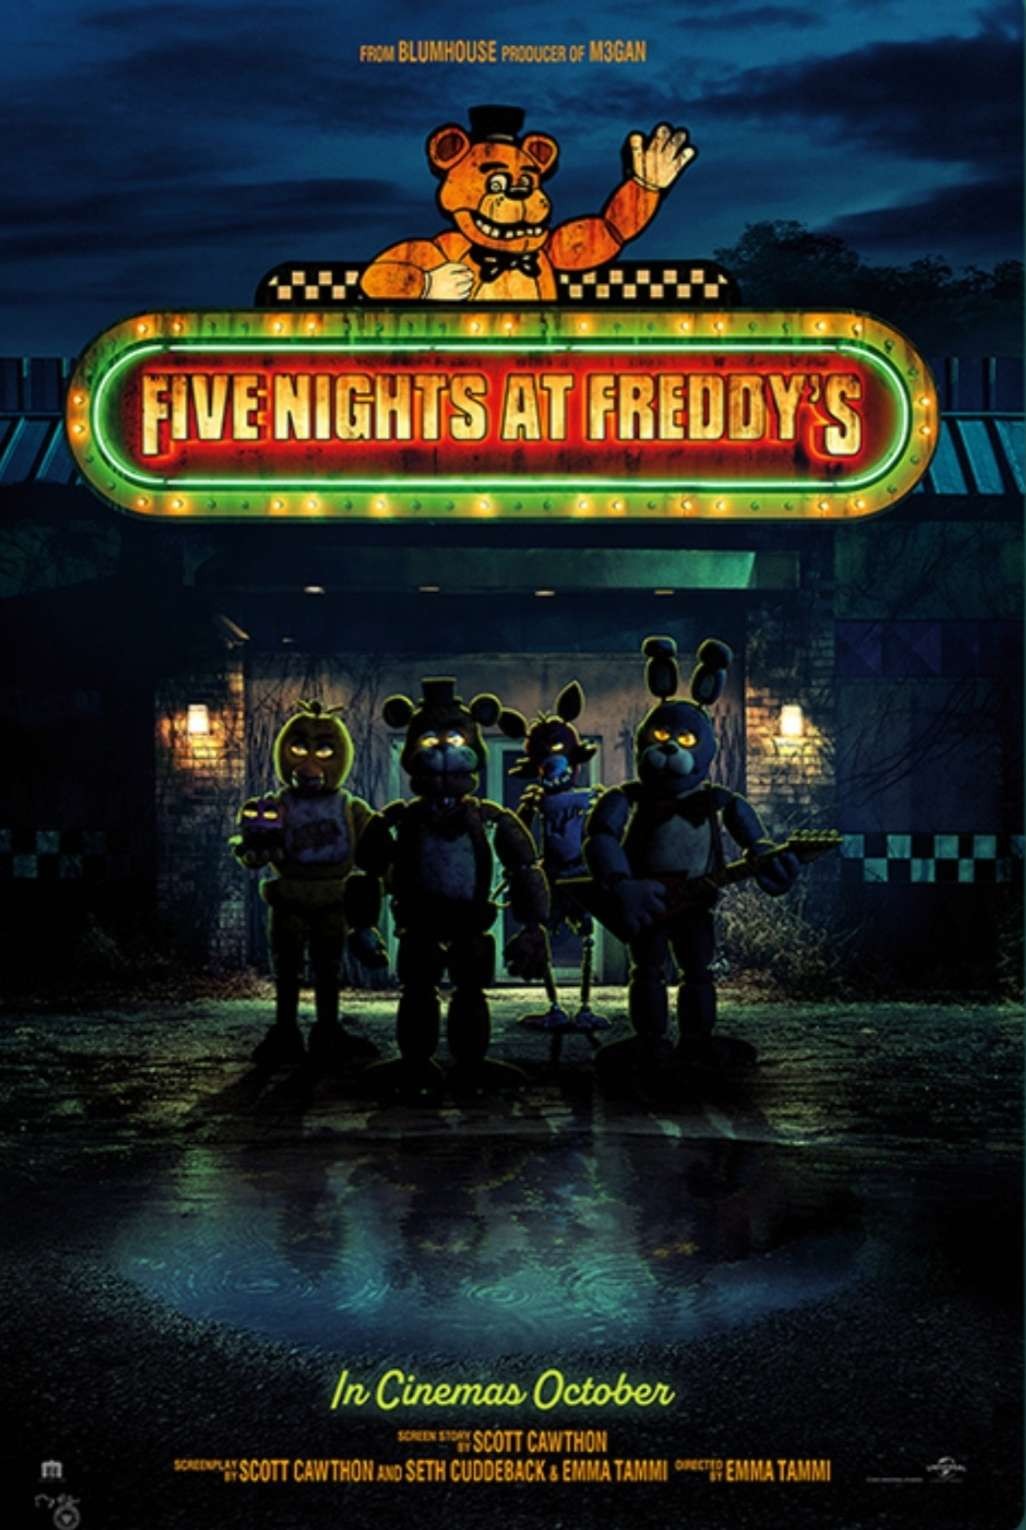 Film Five Nights at Freddy's bergenre horor, adaptasi video game bertema indie survival horror buatan Scott Cawthon dan dirilis pada 2014. (Foto: Blumhouse Productions/Striker Entertainment)